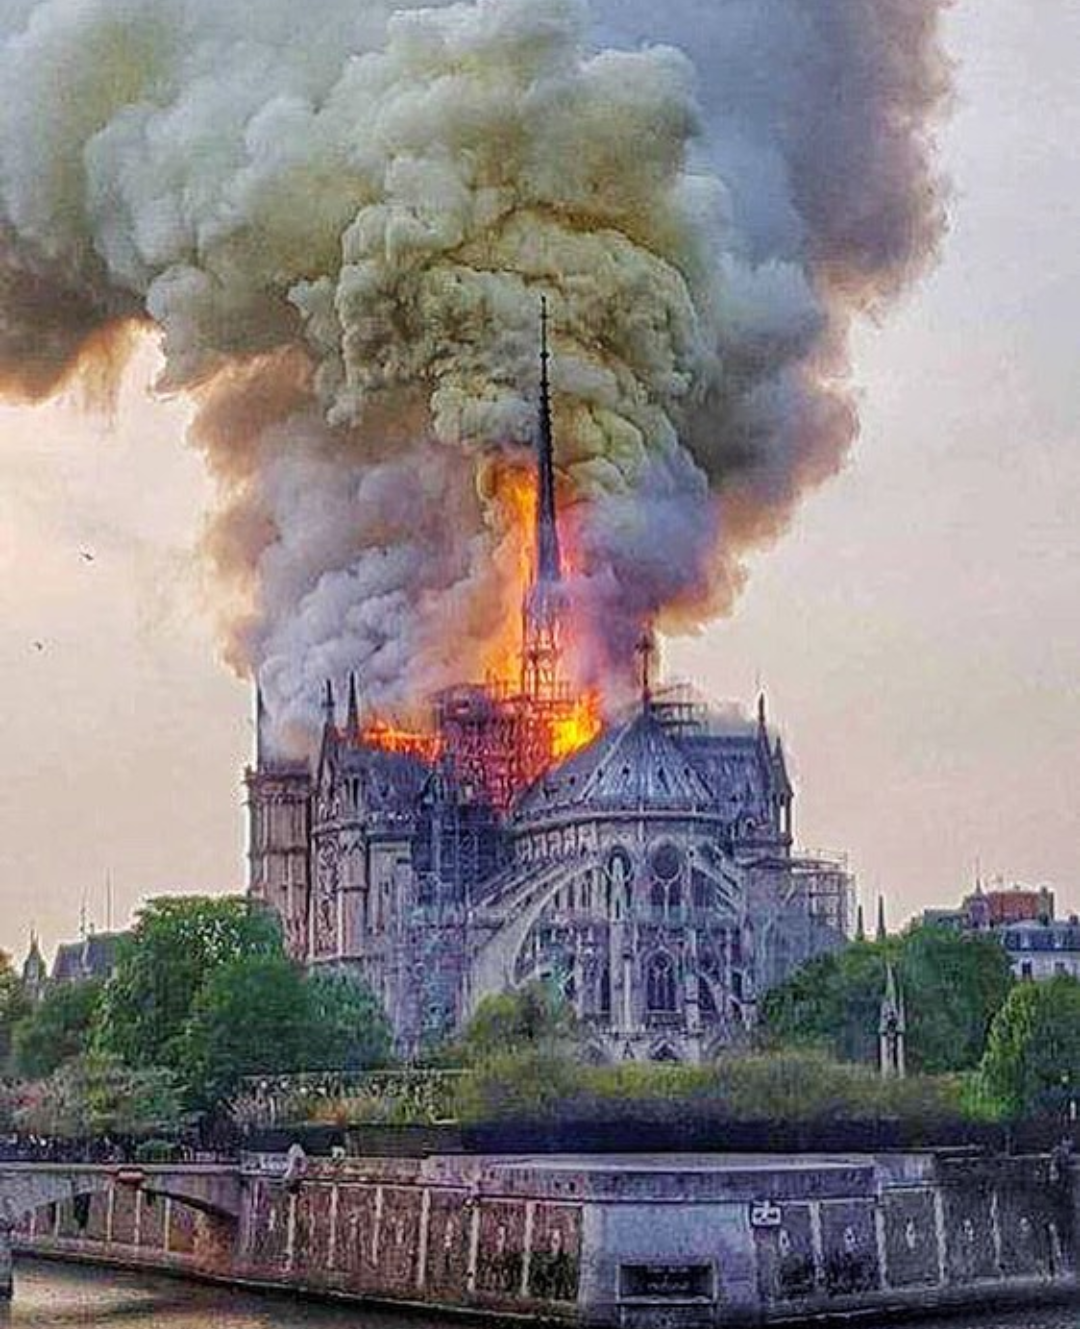 Le foto di Notre Dame che brucia divorata dalle fiamme | Urbanpost